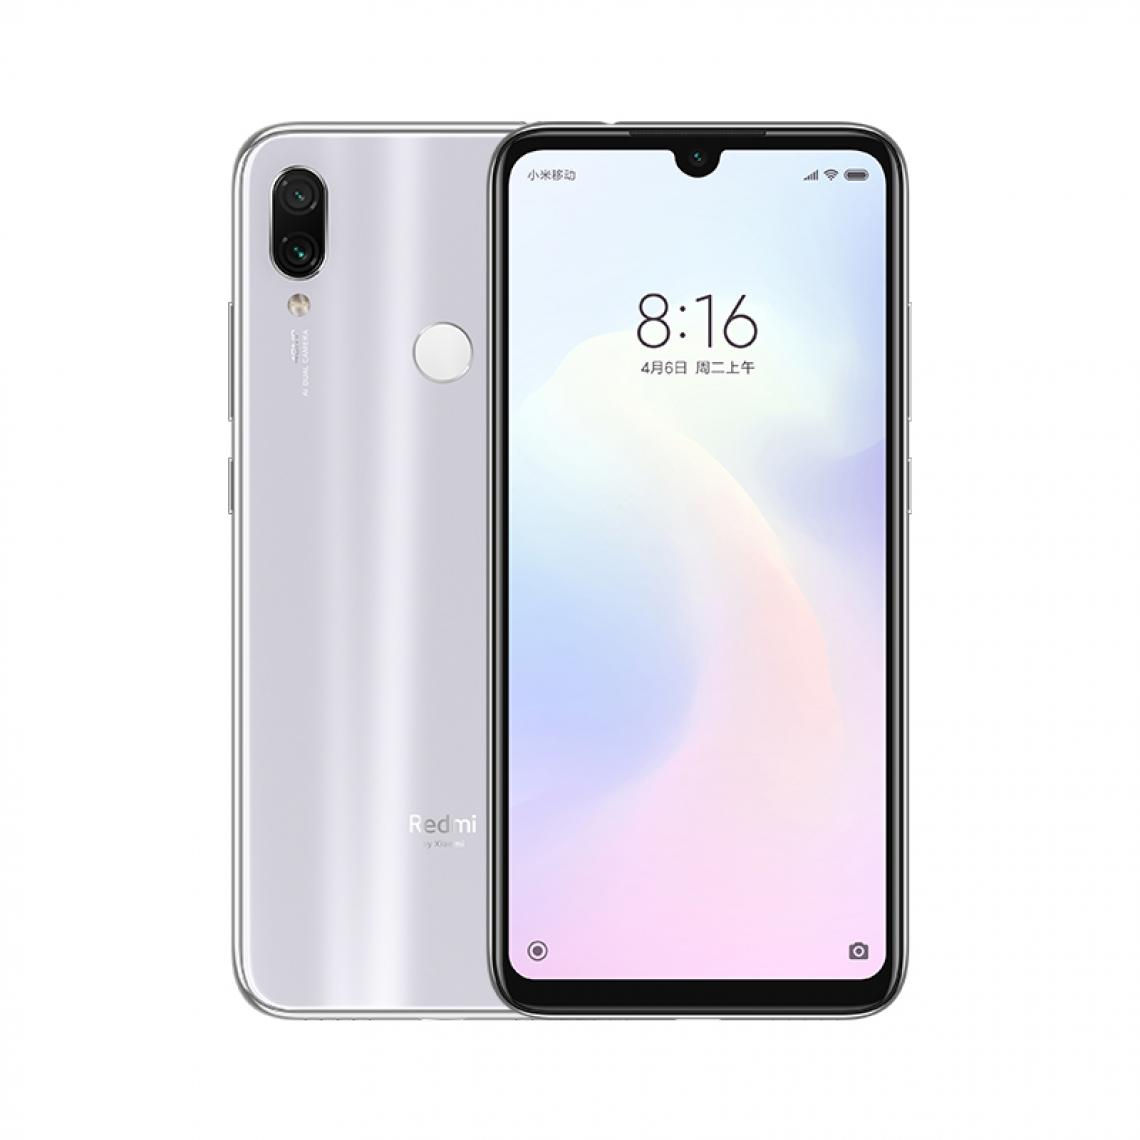 XIAOMI - Redmi Note 7 Pro - Smartphone Android